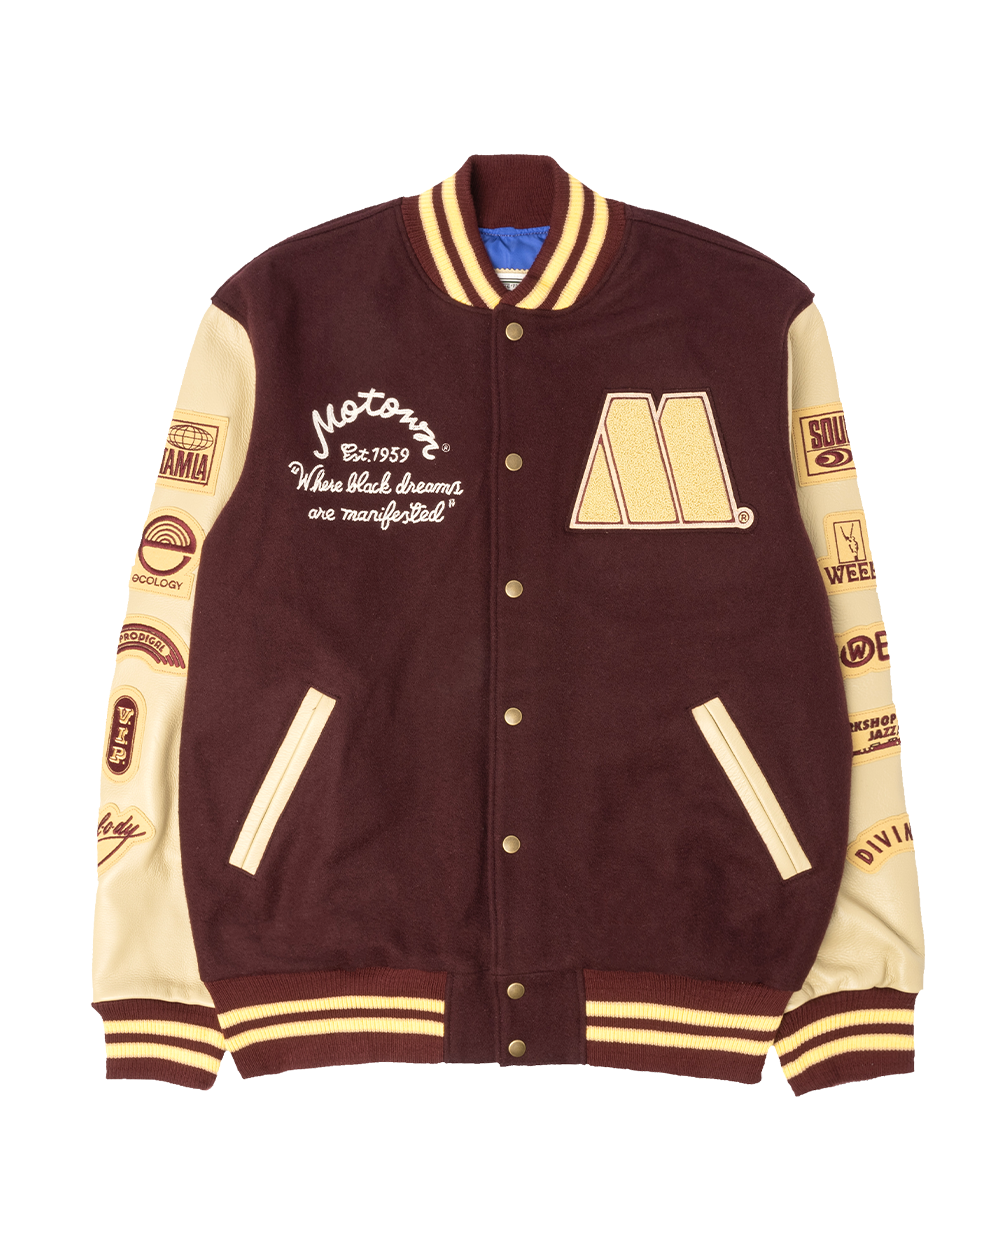 Motown Varsity Jacket